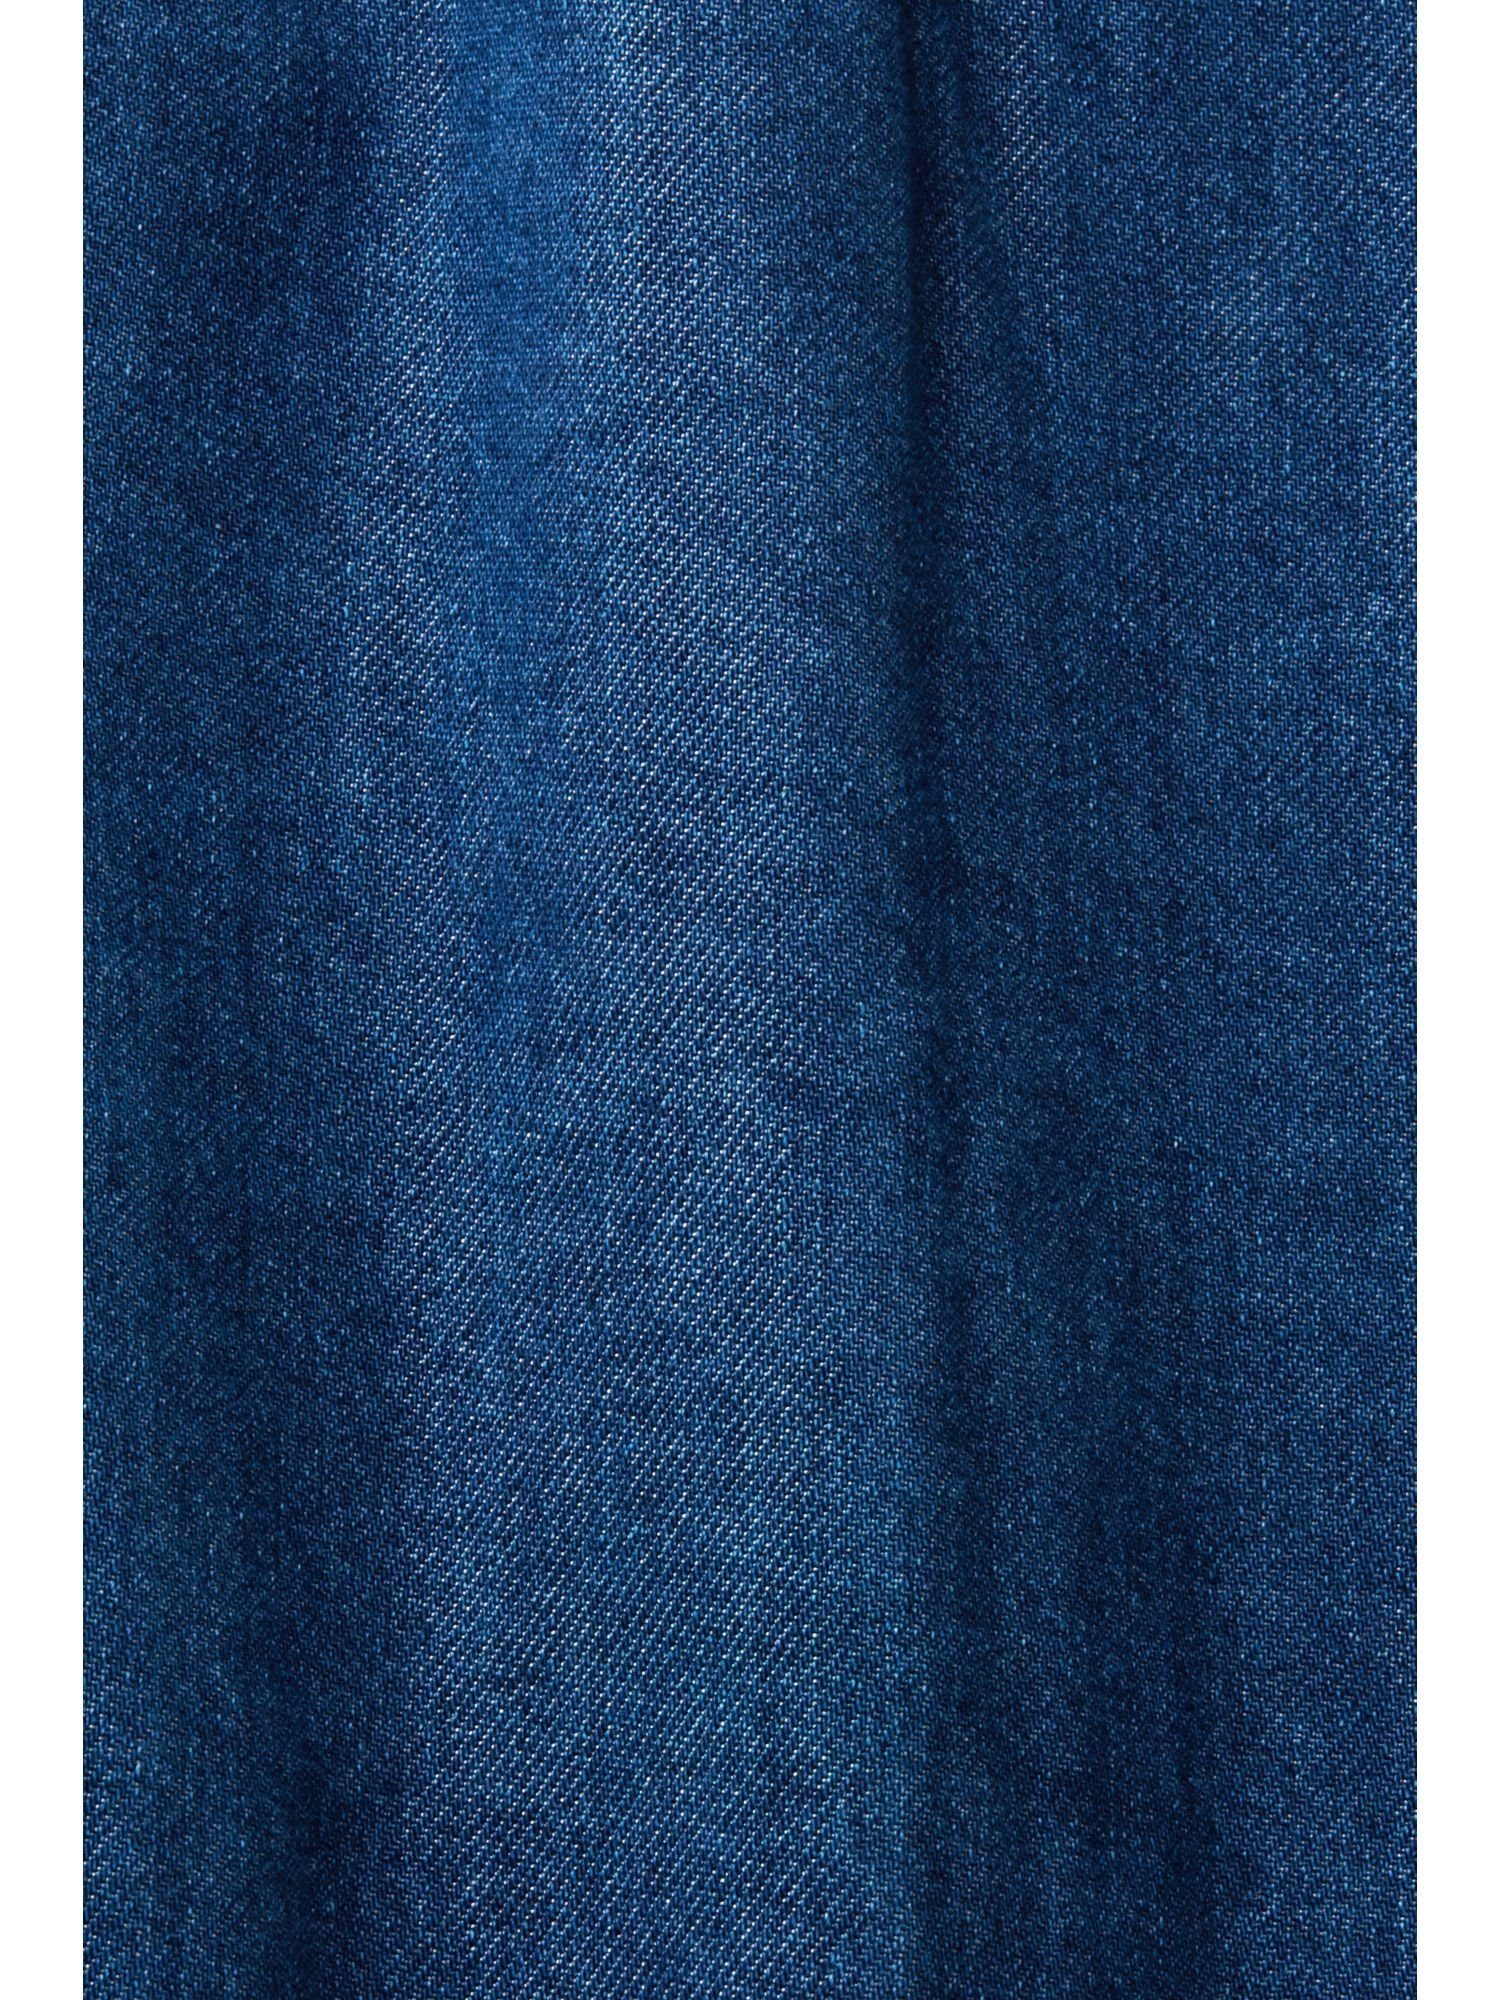 Jeansjacke Collection WASHED Jeansjacke mit Esprit Bindegürtel MEDIUM BLUE